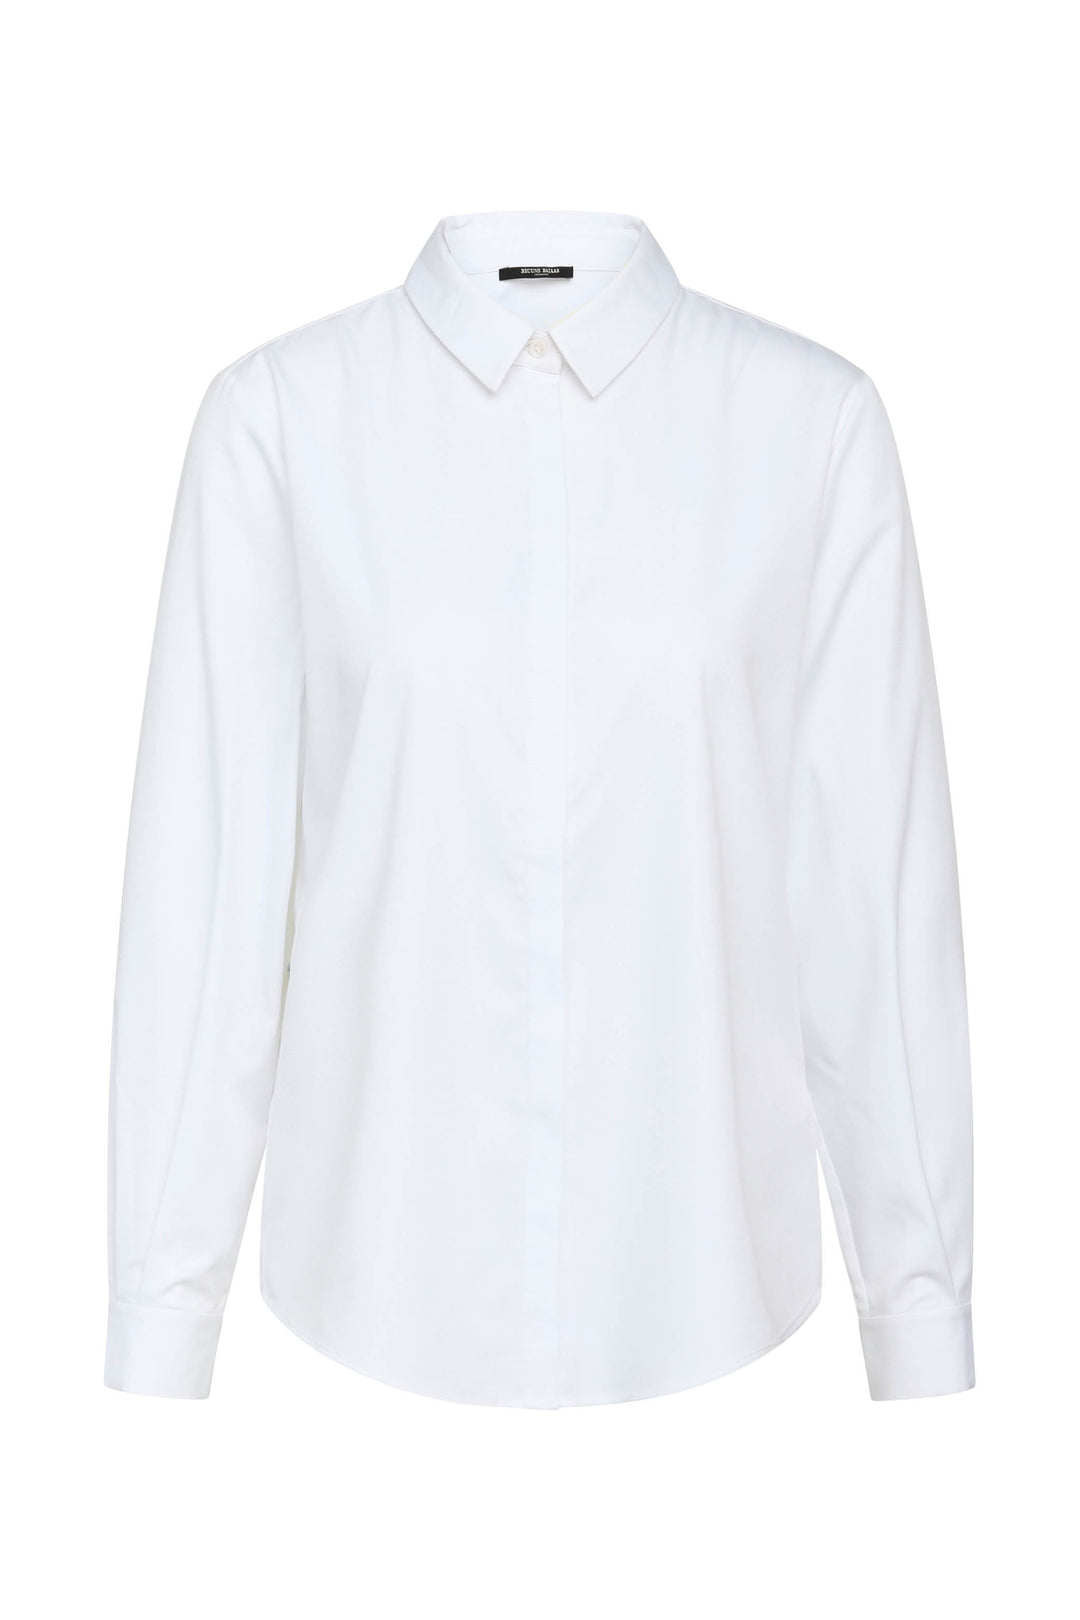 bzr Satina Utillas Shirt - Long-sleeved 